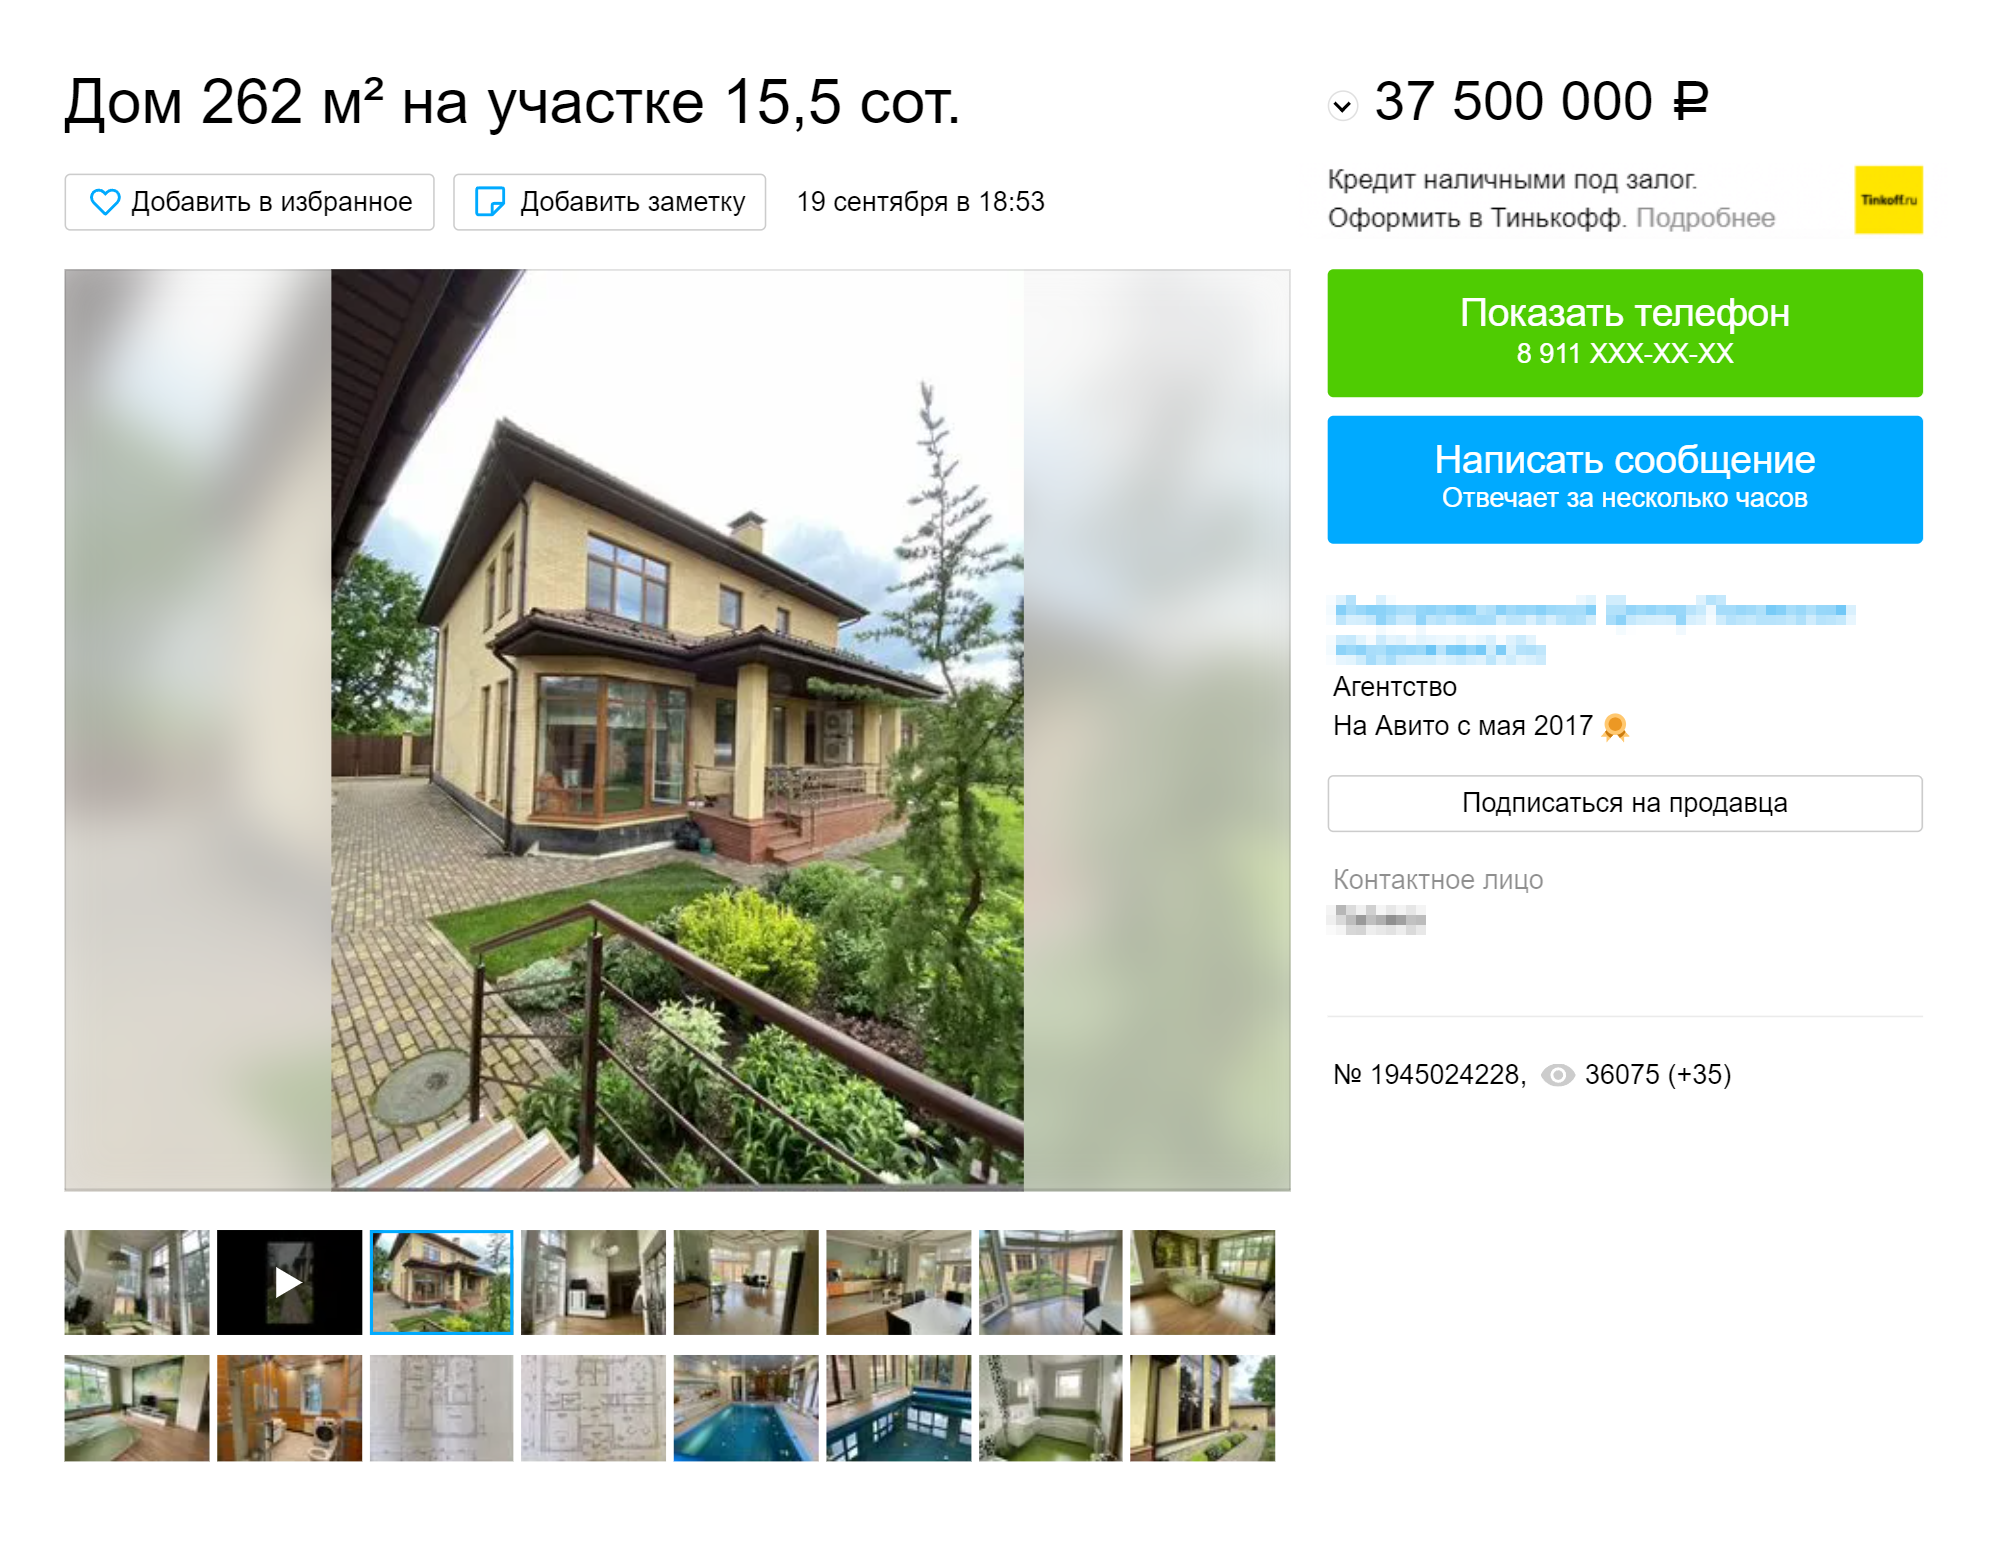 Дом в 15 минутах от центра города за 37,5 млн рублей. Есть баня с бассейном, несколько спален, гардеробных и гостевых комнат